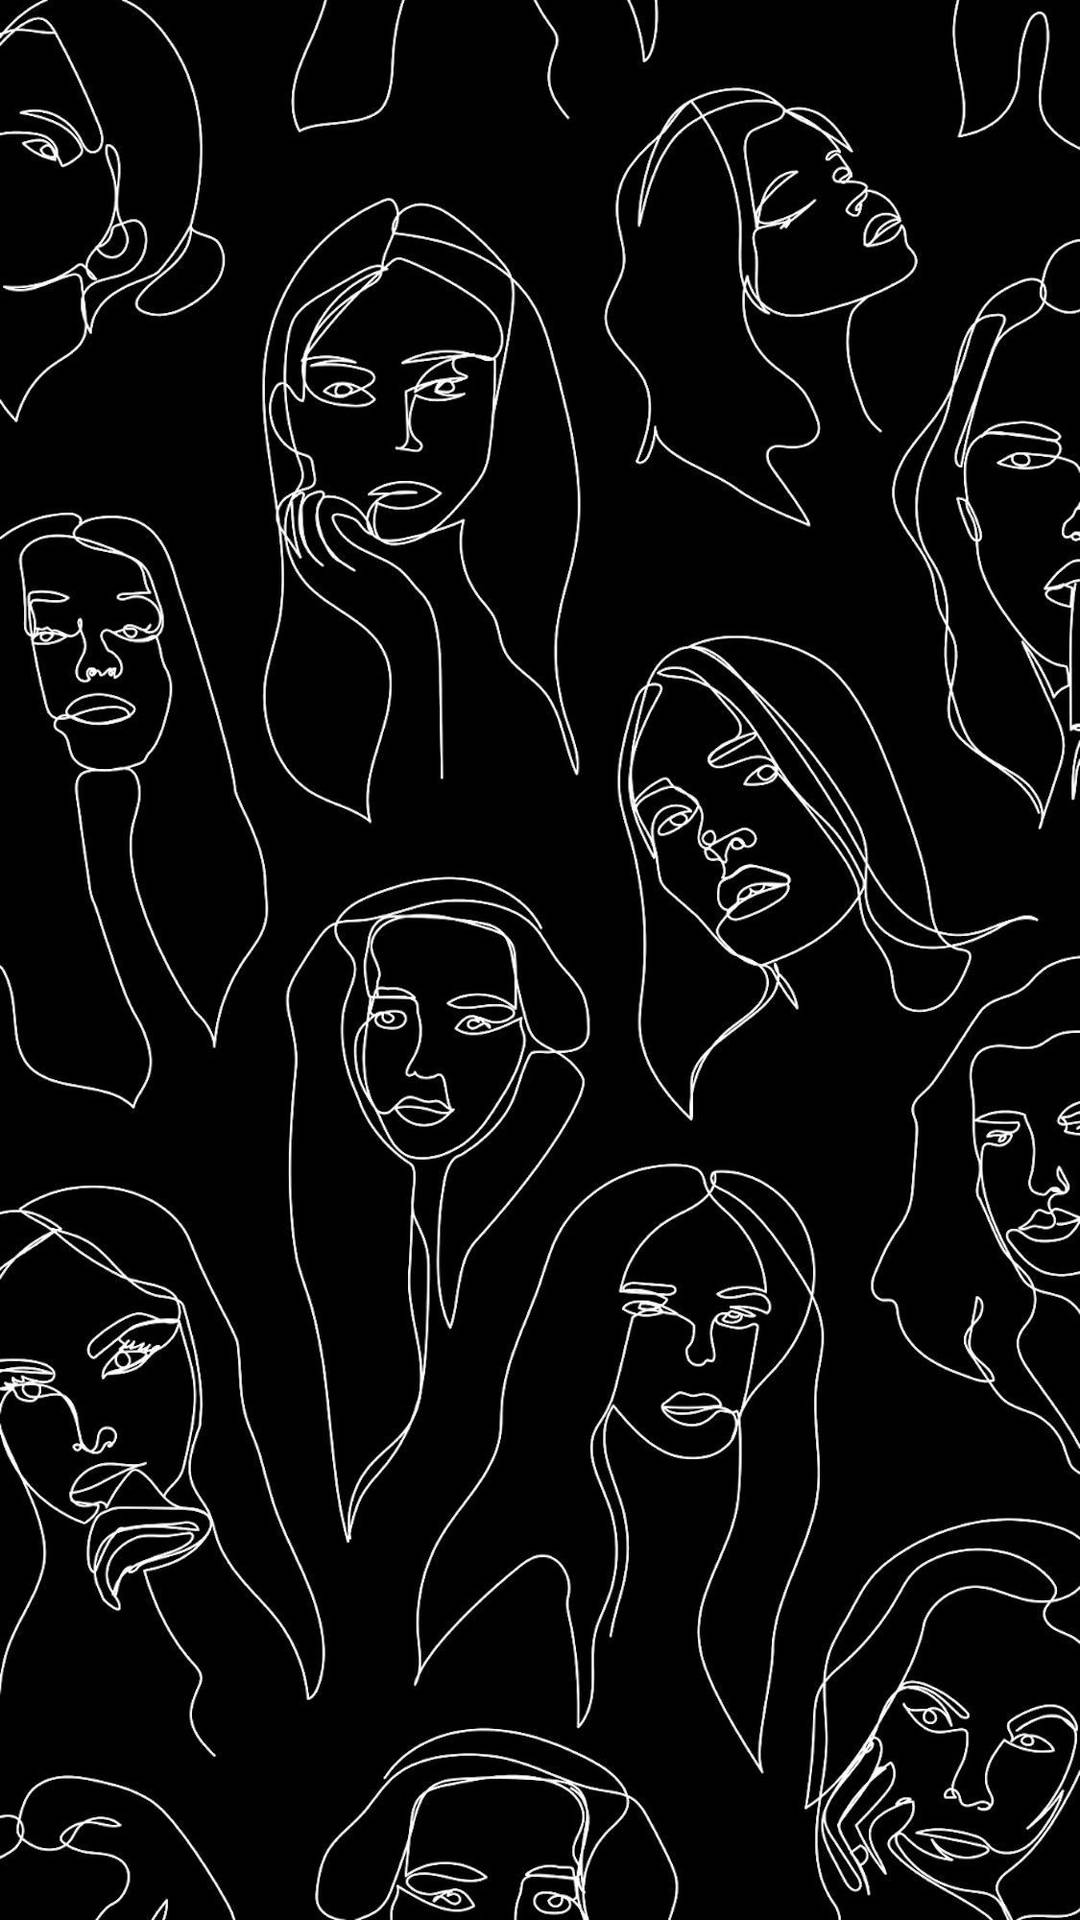 Unpatrón En Blanco Y Negro De Caras De Mujeres Fondo de pantalla